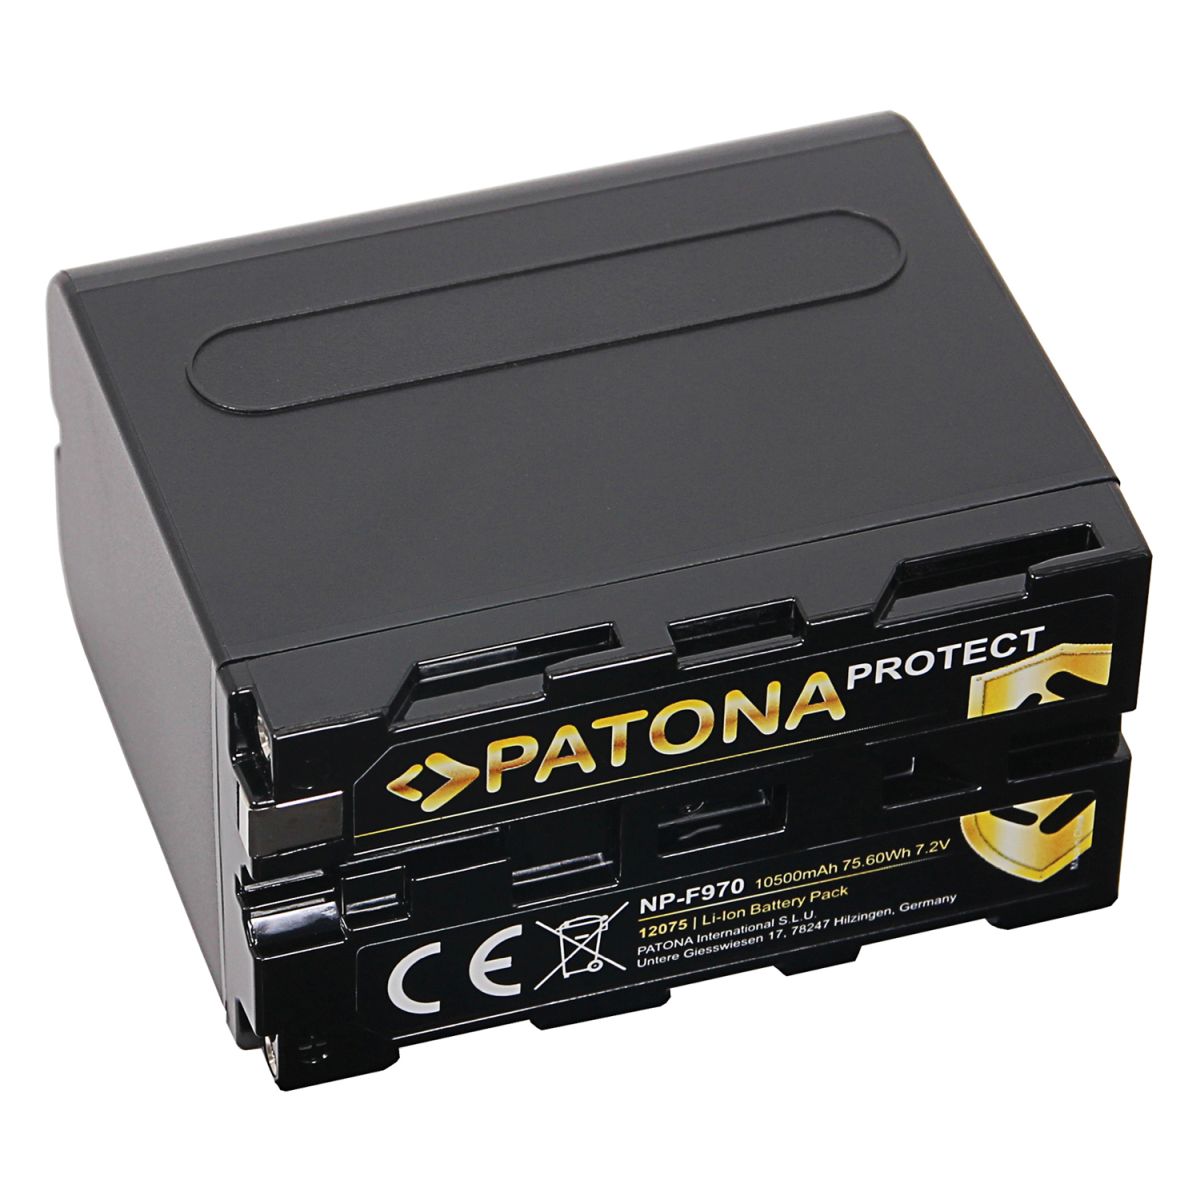 Patona Protect Akku Sony NP-F 970